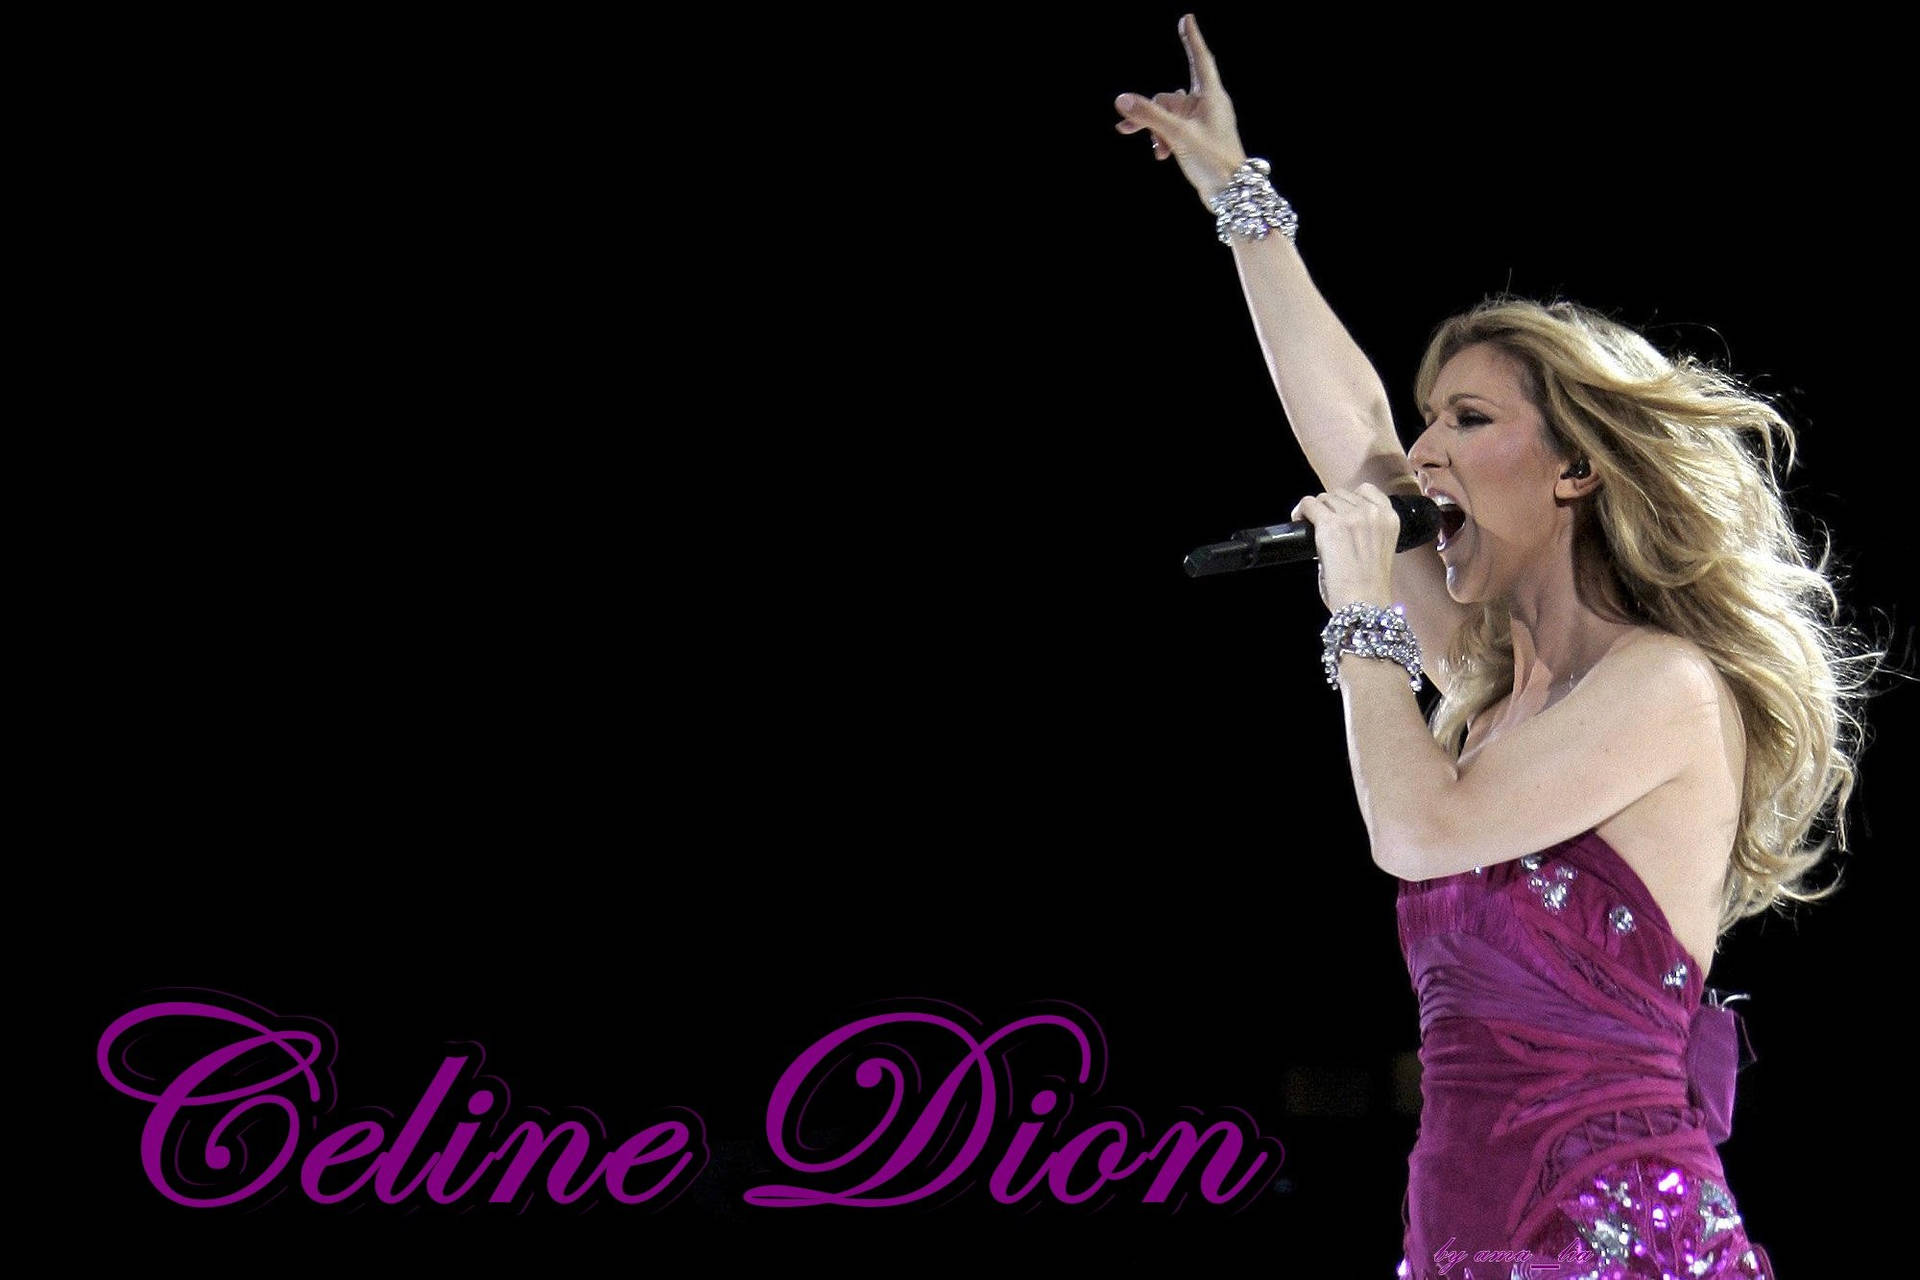 Celine Dion Singing During Concert